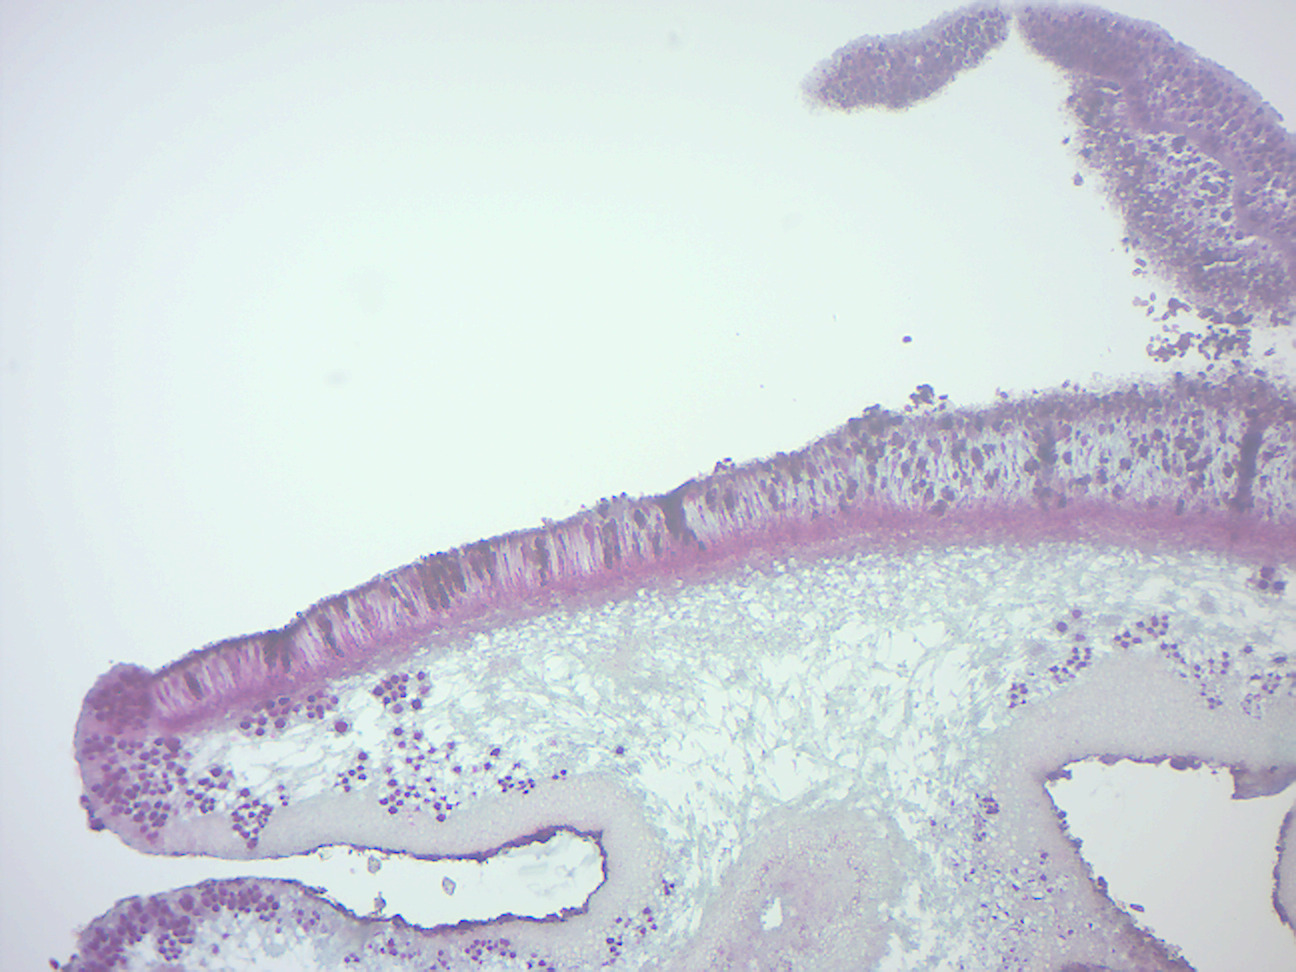 Foliose lichen thallus and apothecia.